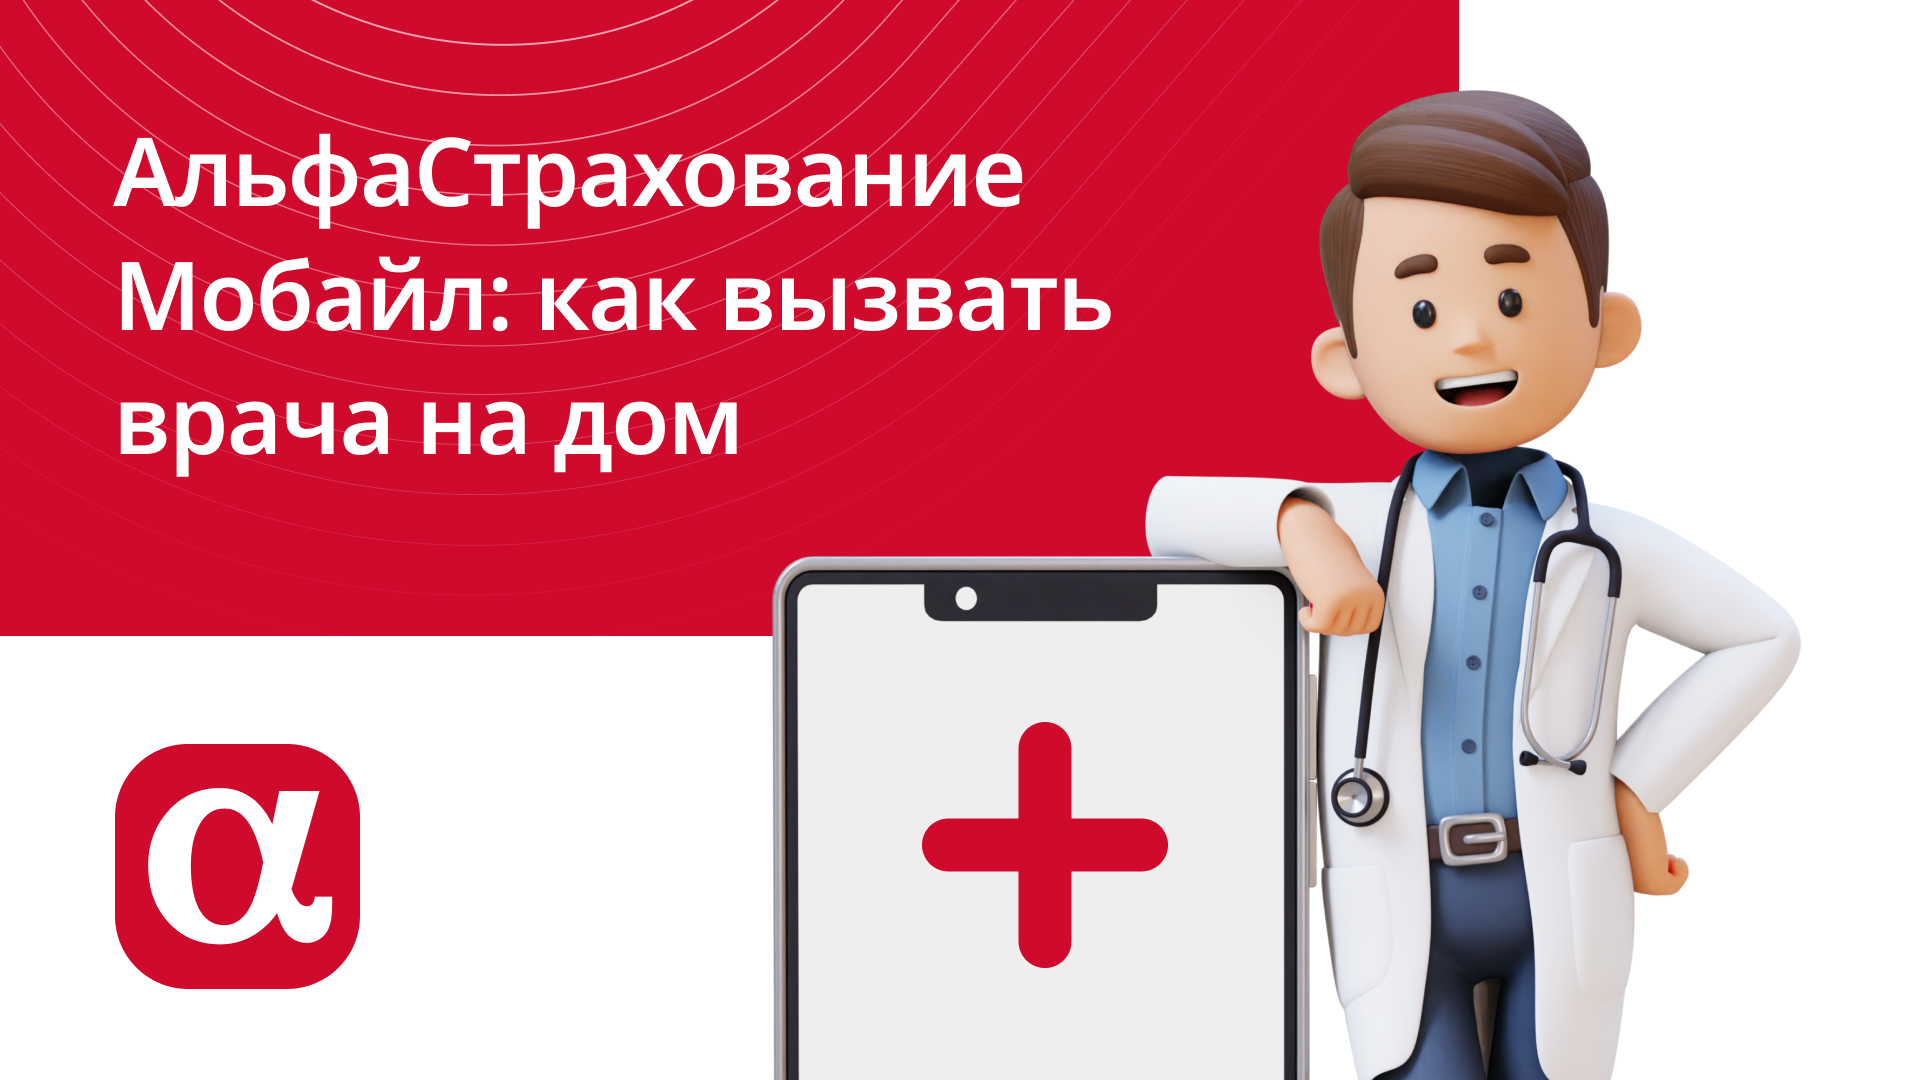 Мобильное приложение АльфаСтрахование Мобайл: как вызвать врача на дом или скорую помощь